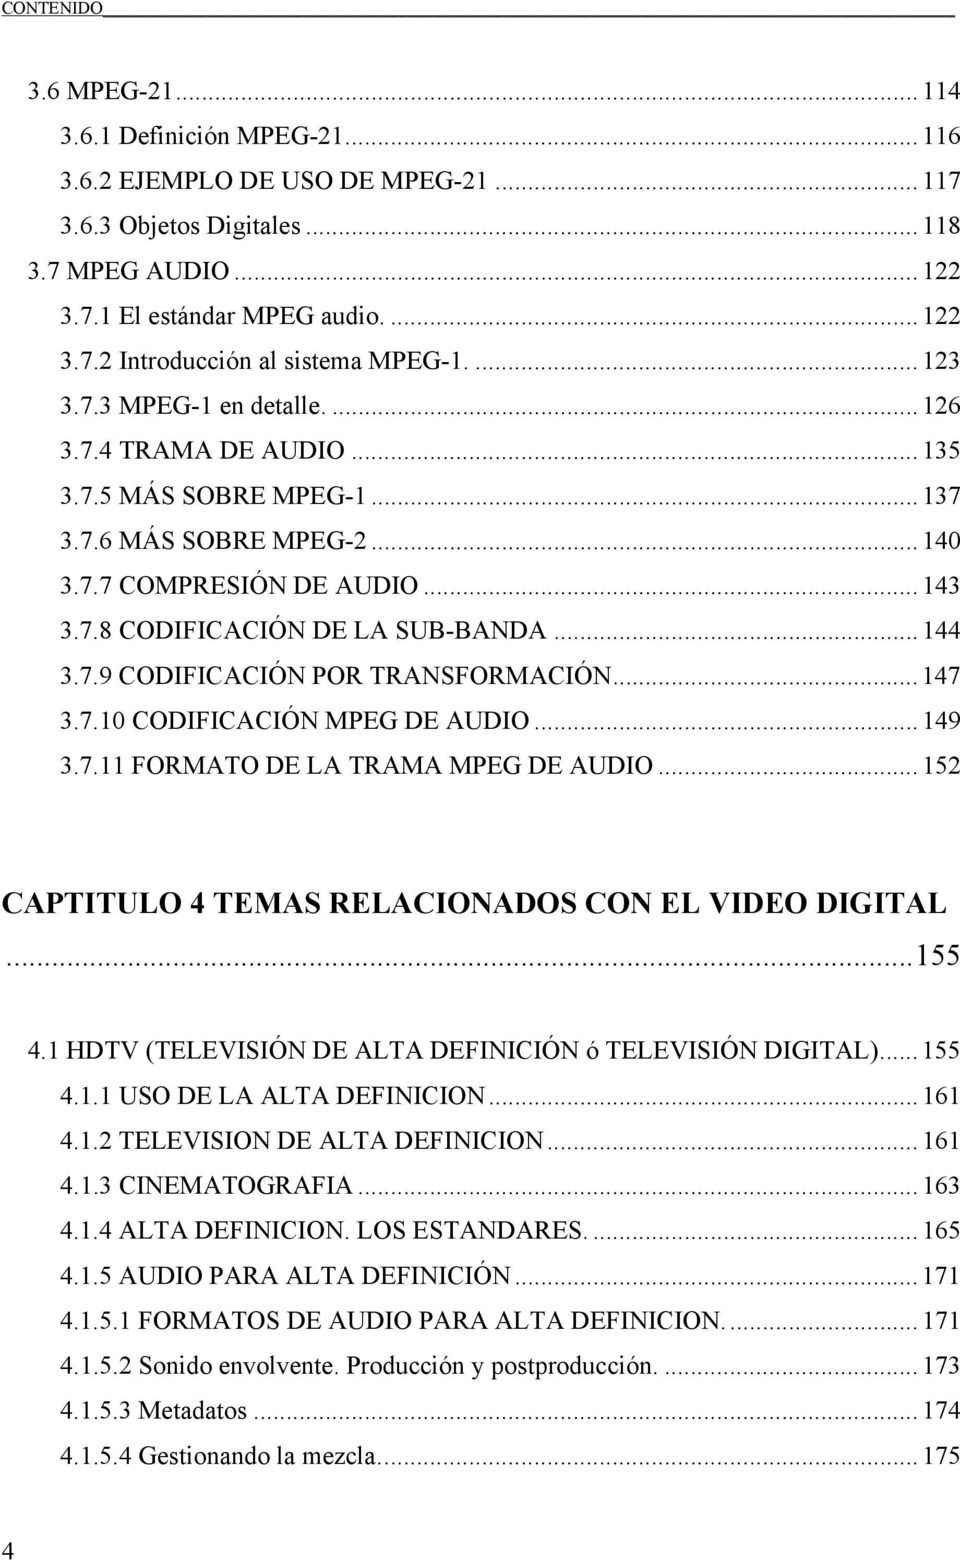 7.9 CODIFICACIÓN POR TRANSFORMACIÓN... 147 3.7.10 CODIFICACIÓN MPEG DE AUDIO... 149 3.7.11 FORMATO DE LA TRAMA MPEG DE AUDIO... 152 CAPTITULO 4 TEMAS RELACIONADOS CON EL VIDEO DIGITAL...155 4.